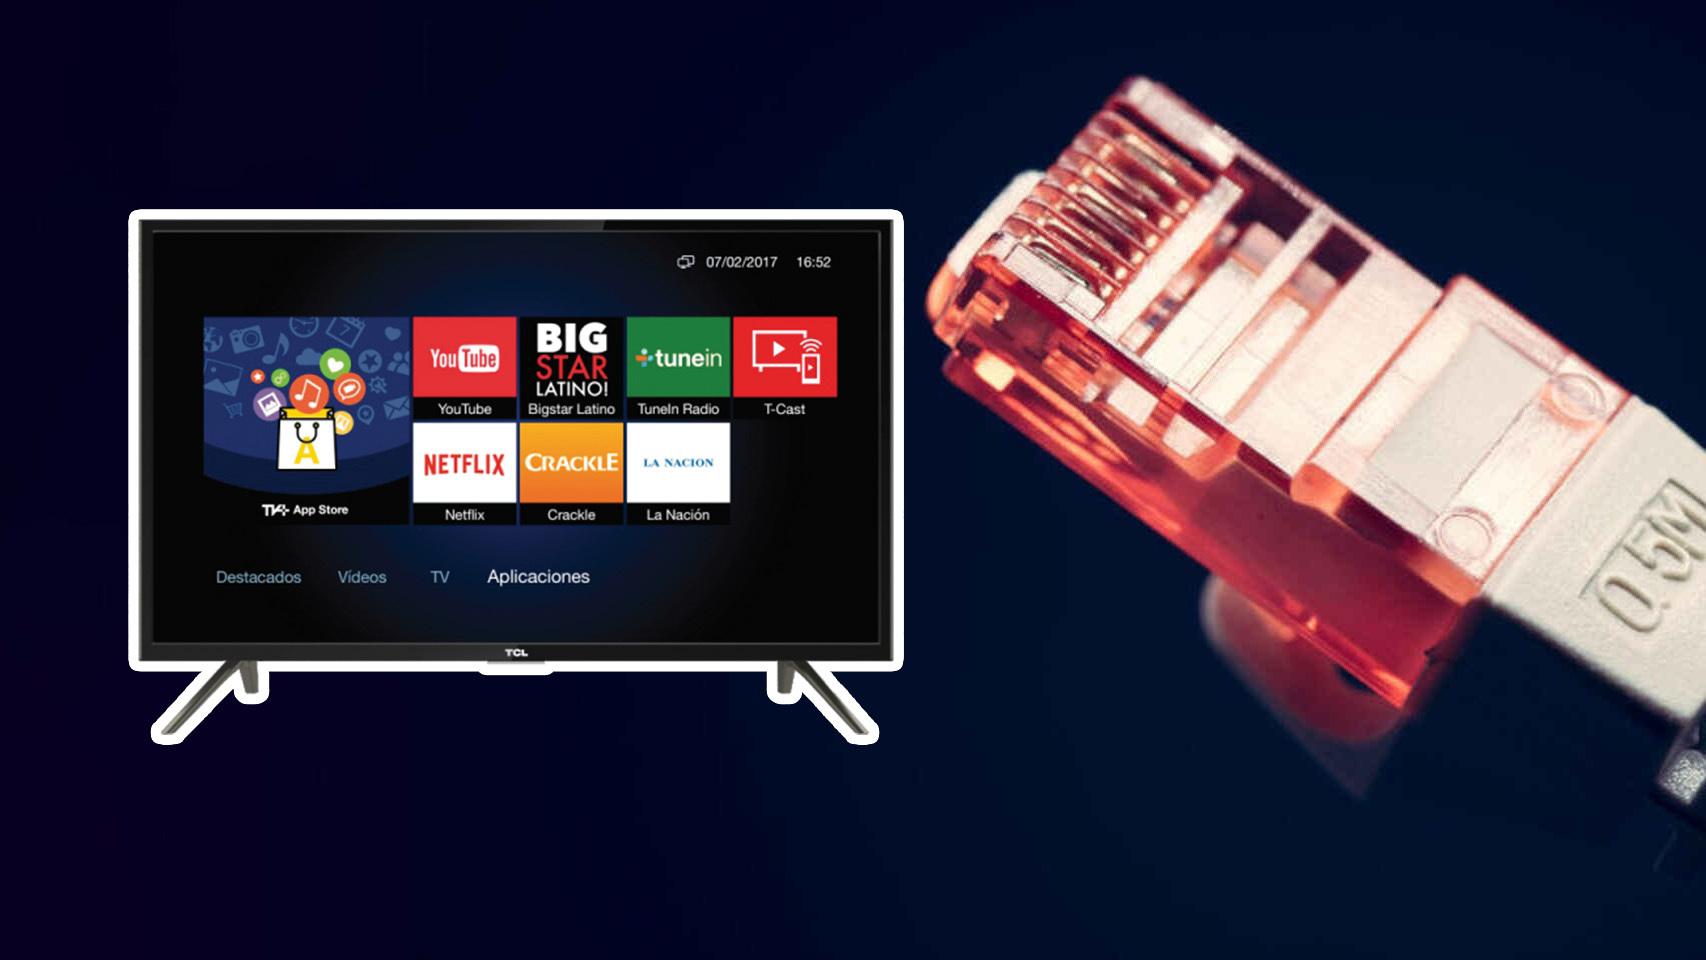 Motivos para no conectar una Smart TV a Internet por WiFi